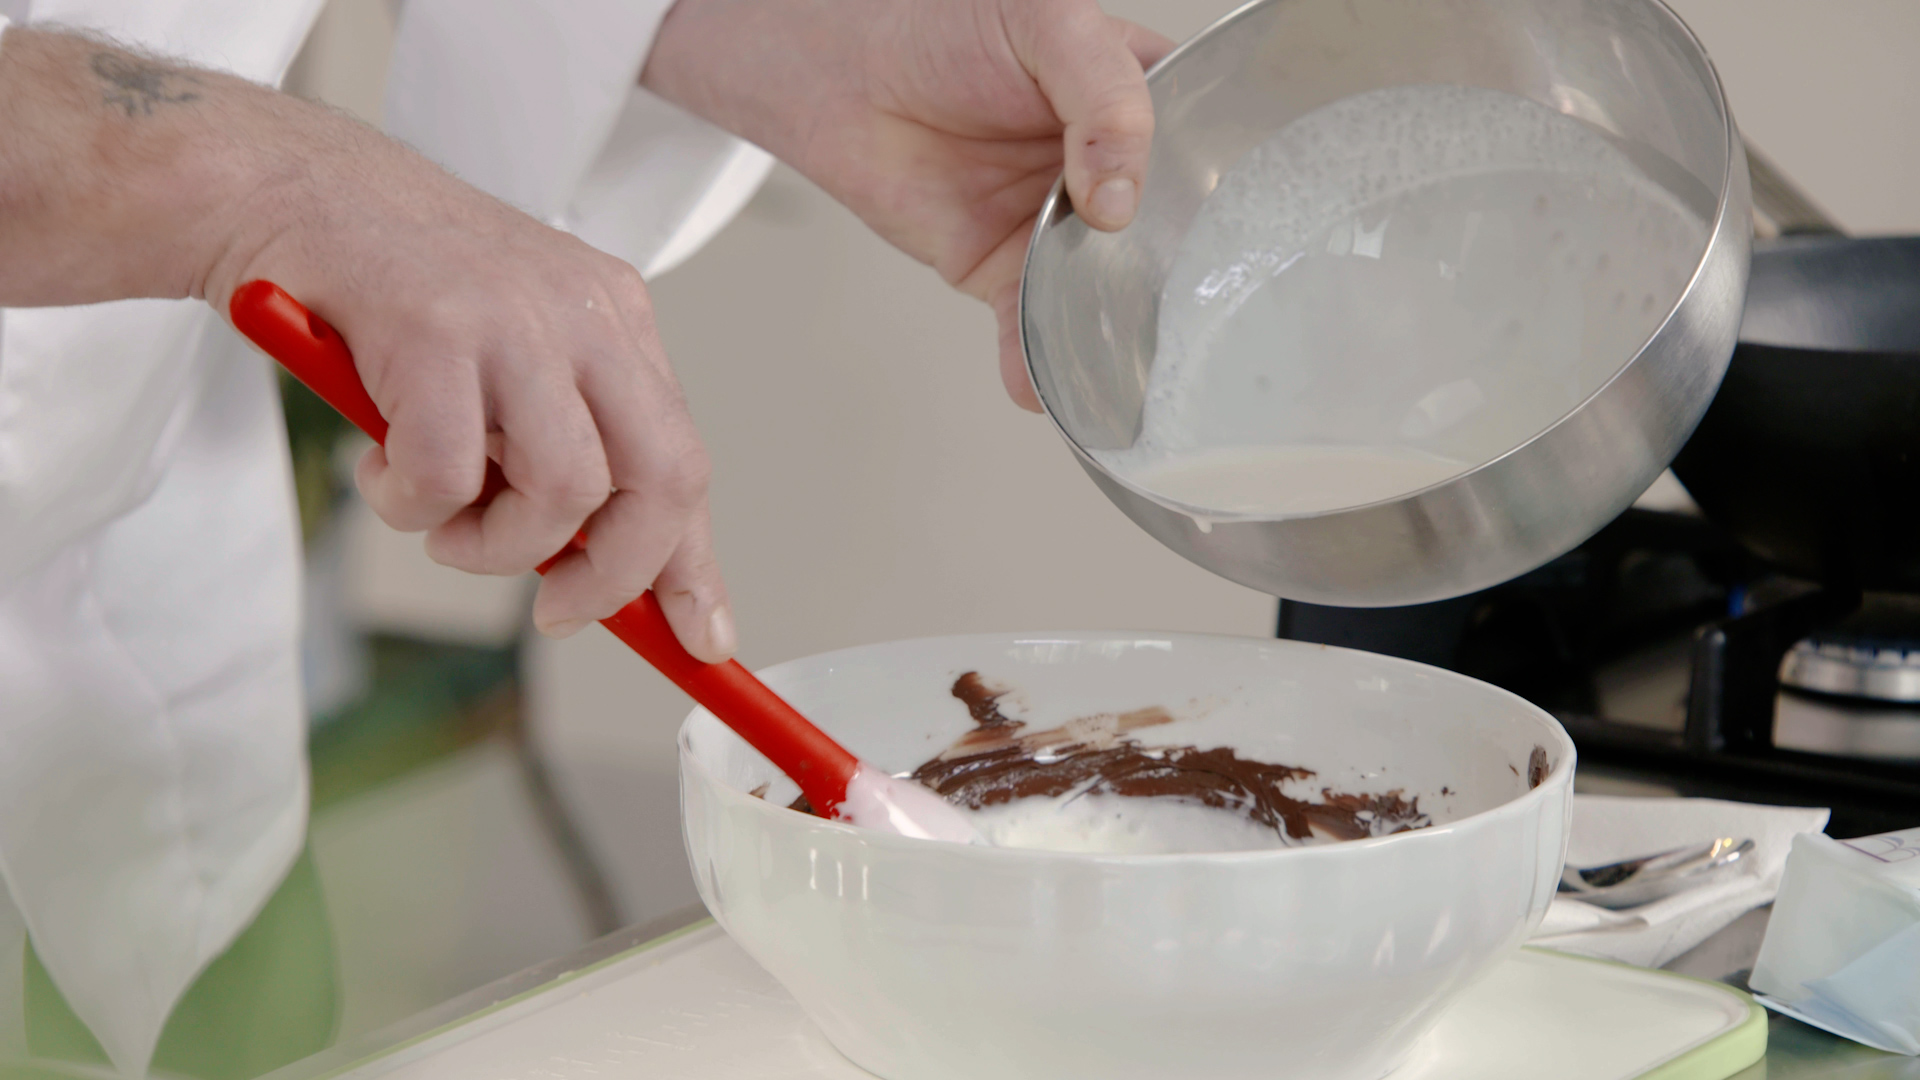 Step 4) Unire il cioccolato fuso alla panna precedentemente riscaldata, girare e lasciare rassodare in frigorifero per 20 minuti